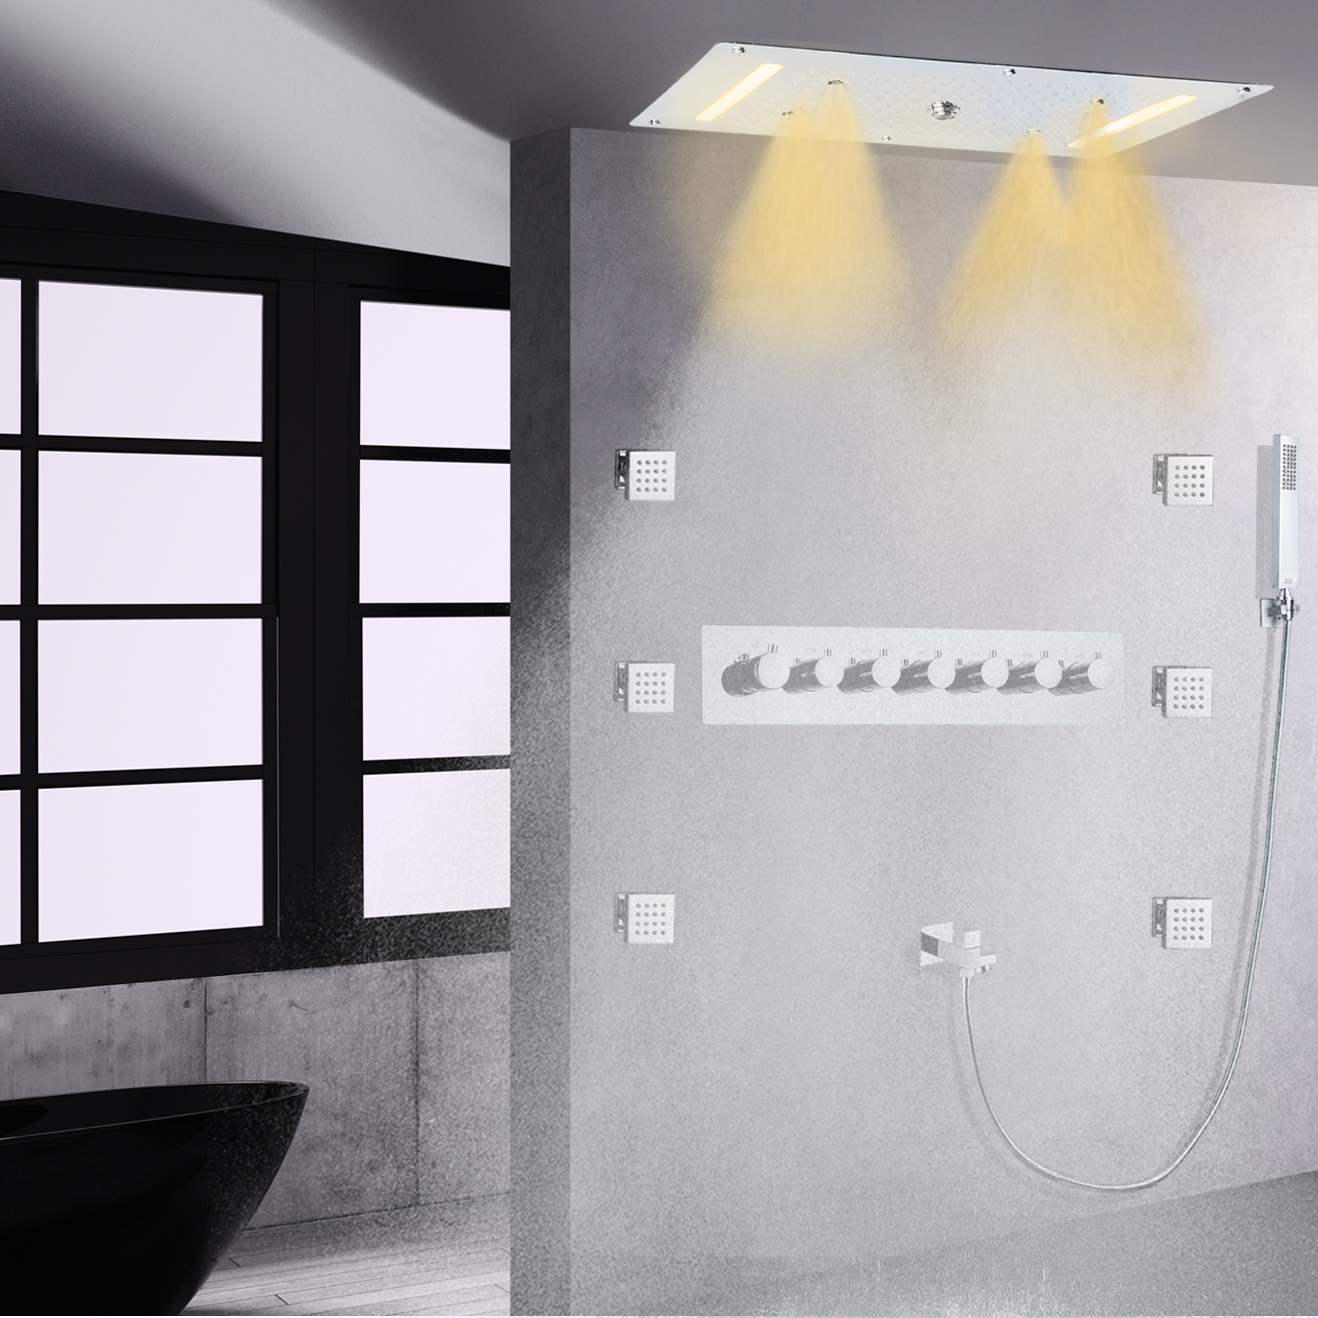 Cromo polido led termostática misturador de chuveiro do banheiro sistema cachoeira chuvas handheld corpo jet spa